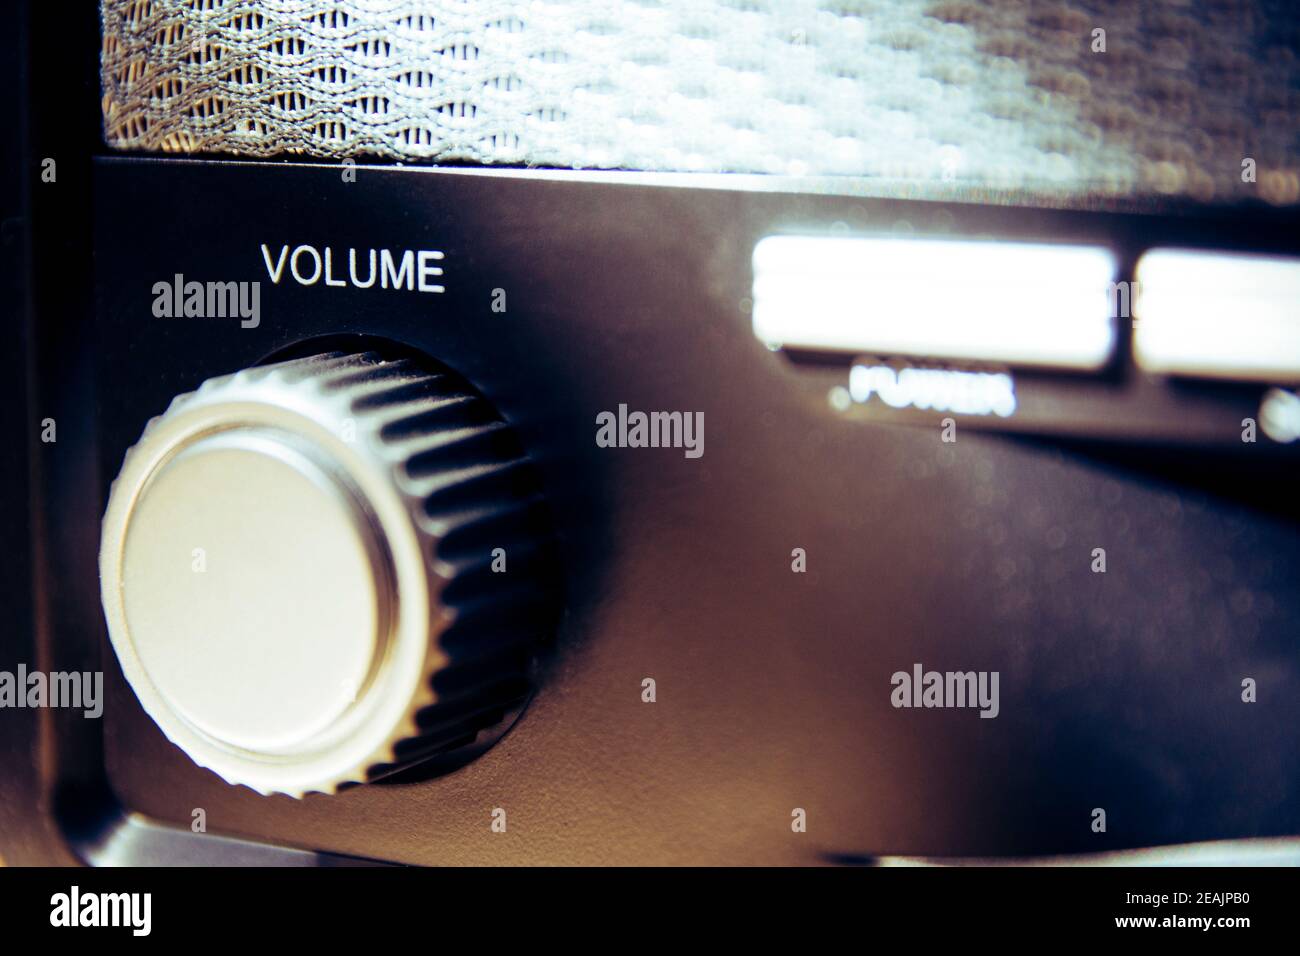 Manopola del volume su una radio analogica vecchia e vintage. Primo piano e dettaglio. Copia spazio. Foto Stock